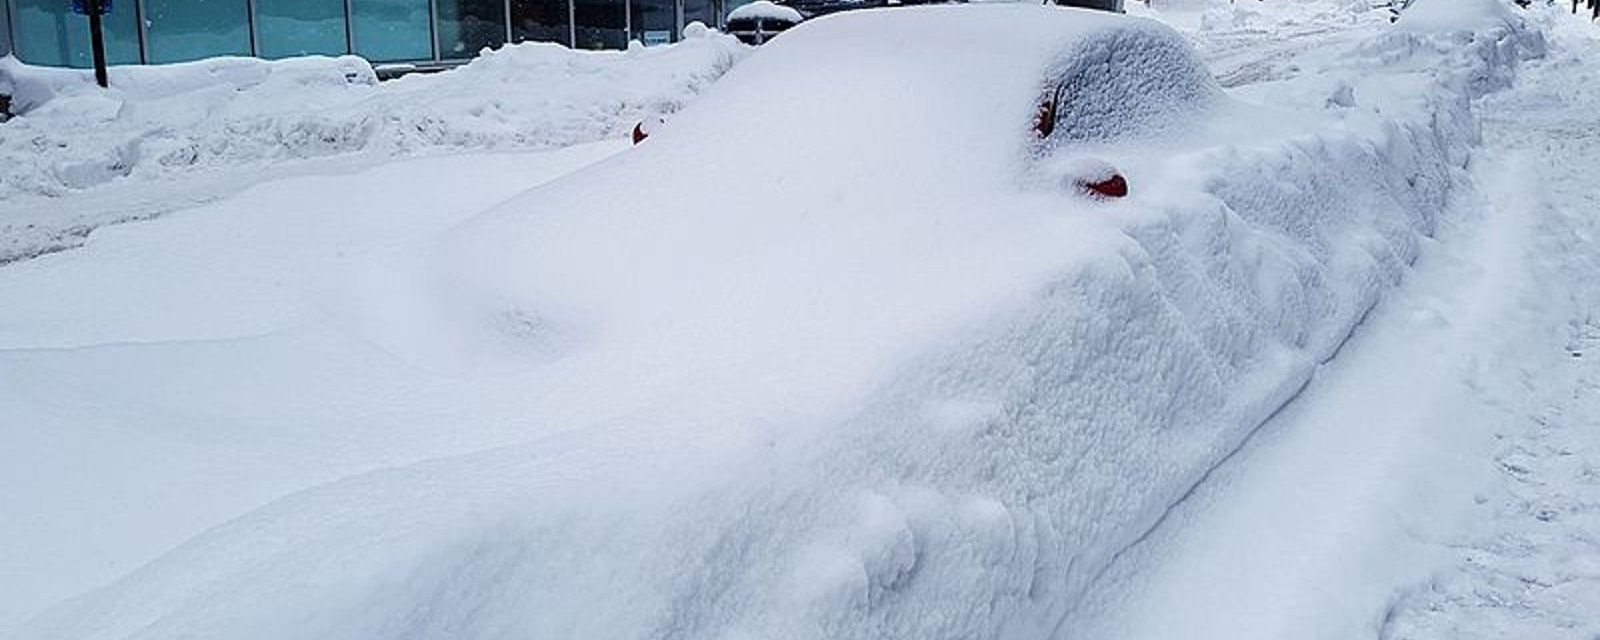 De nombreuses écoles québécoises fermées aujourd'hui en raison de la mauvaise météo